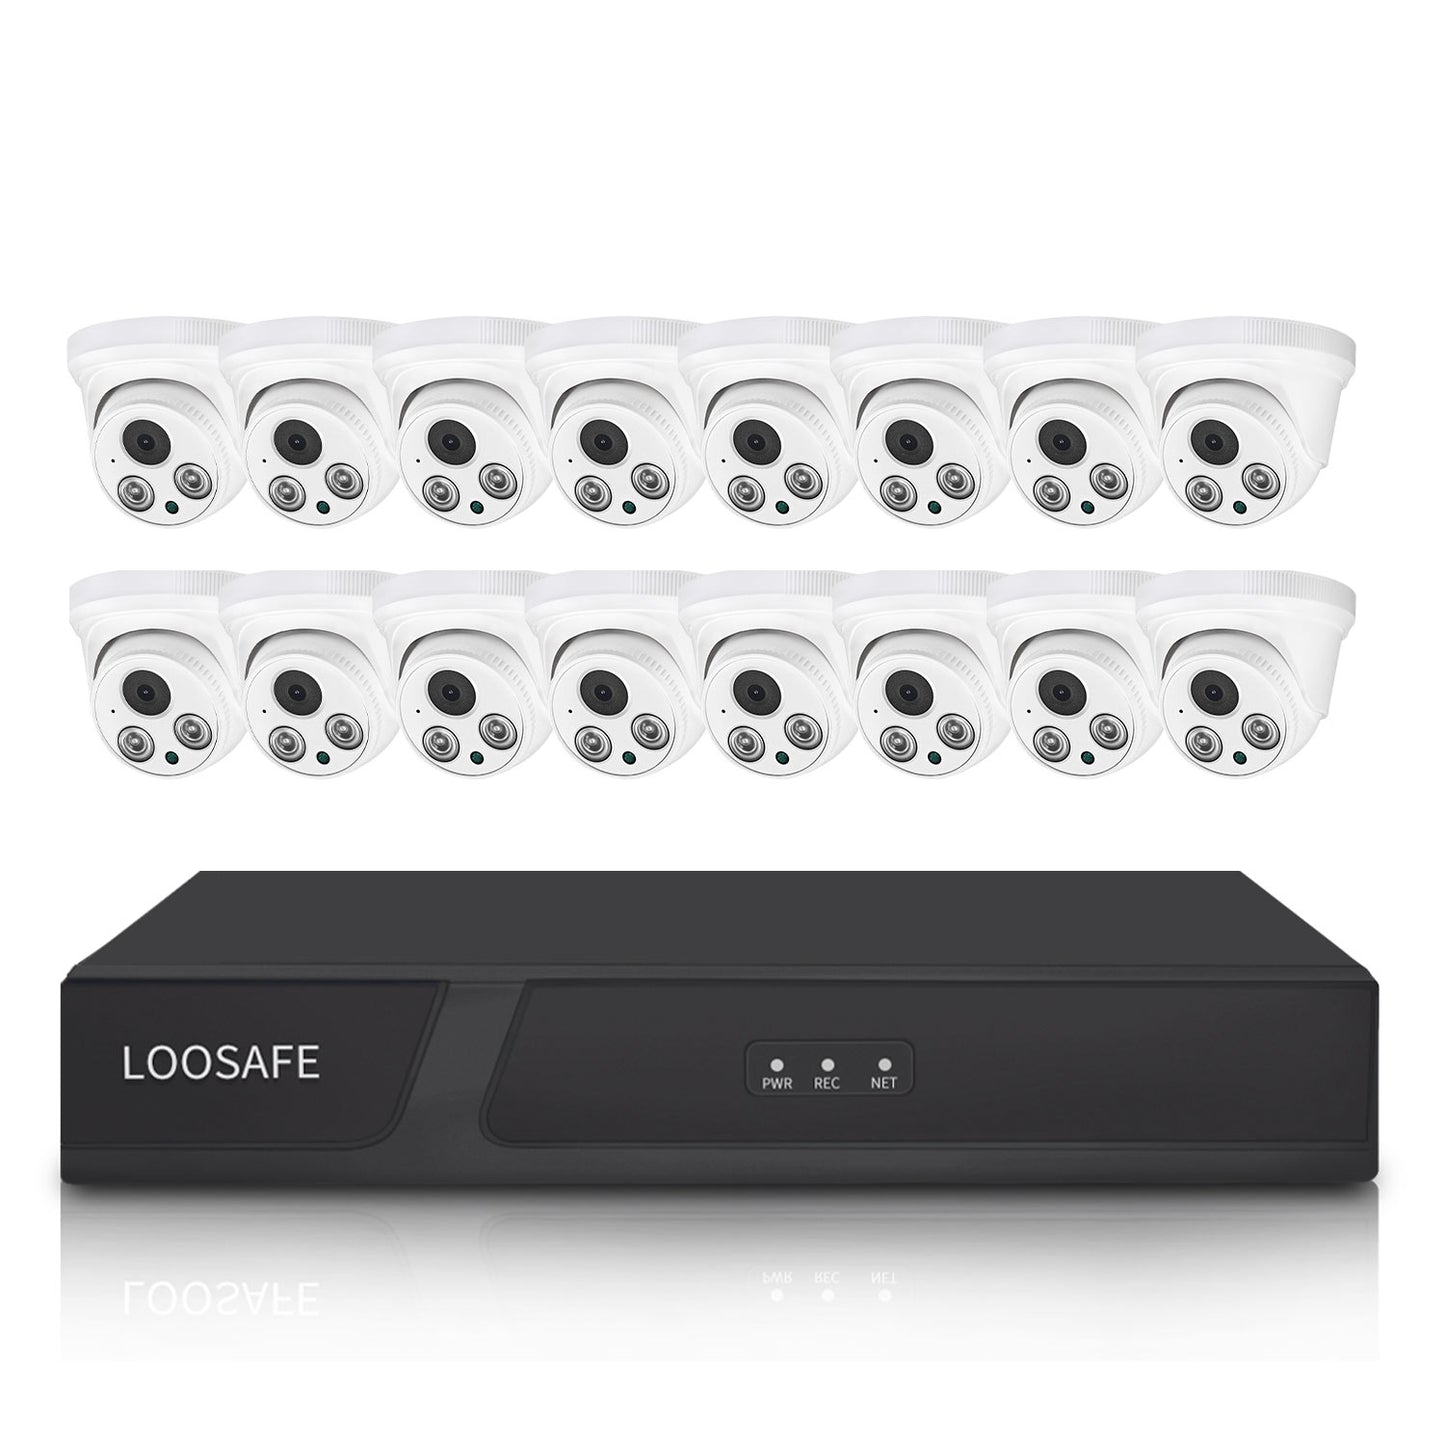 LOOSAFE SAT16 PoE Suiveillance NVR Kits 16pcs Cameras